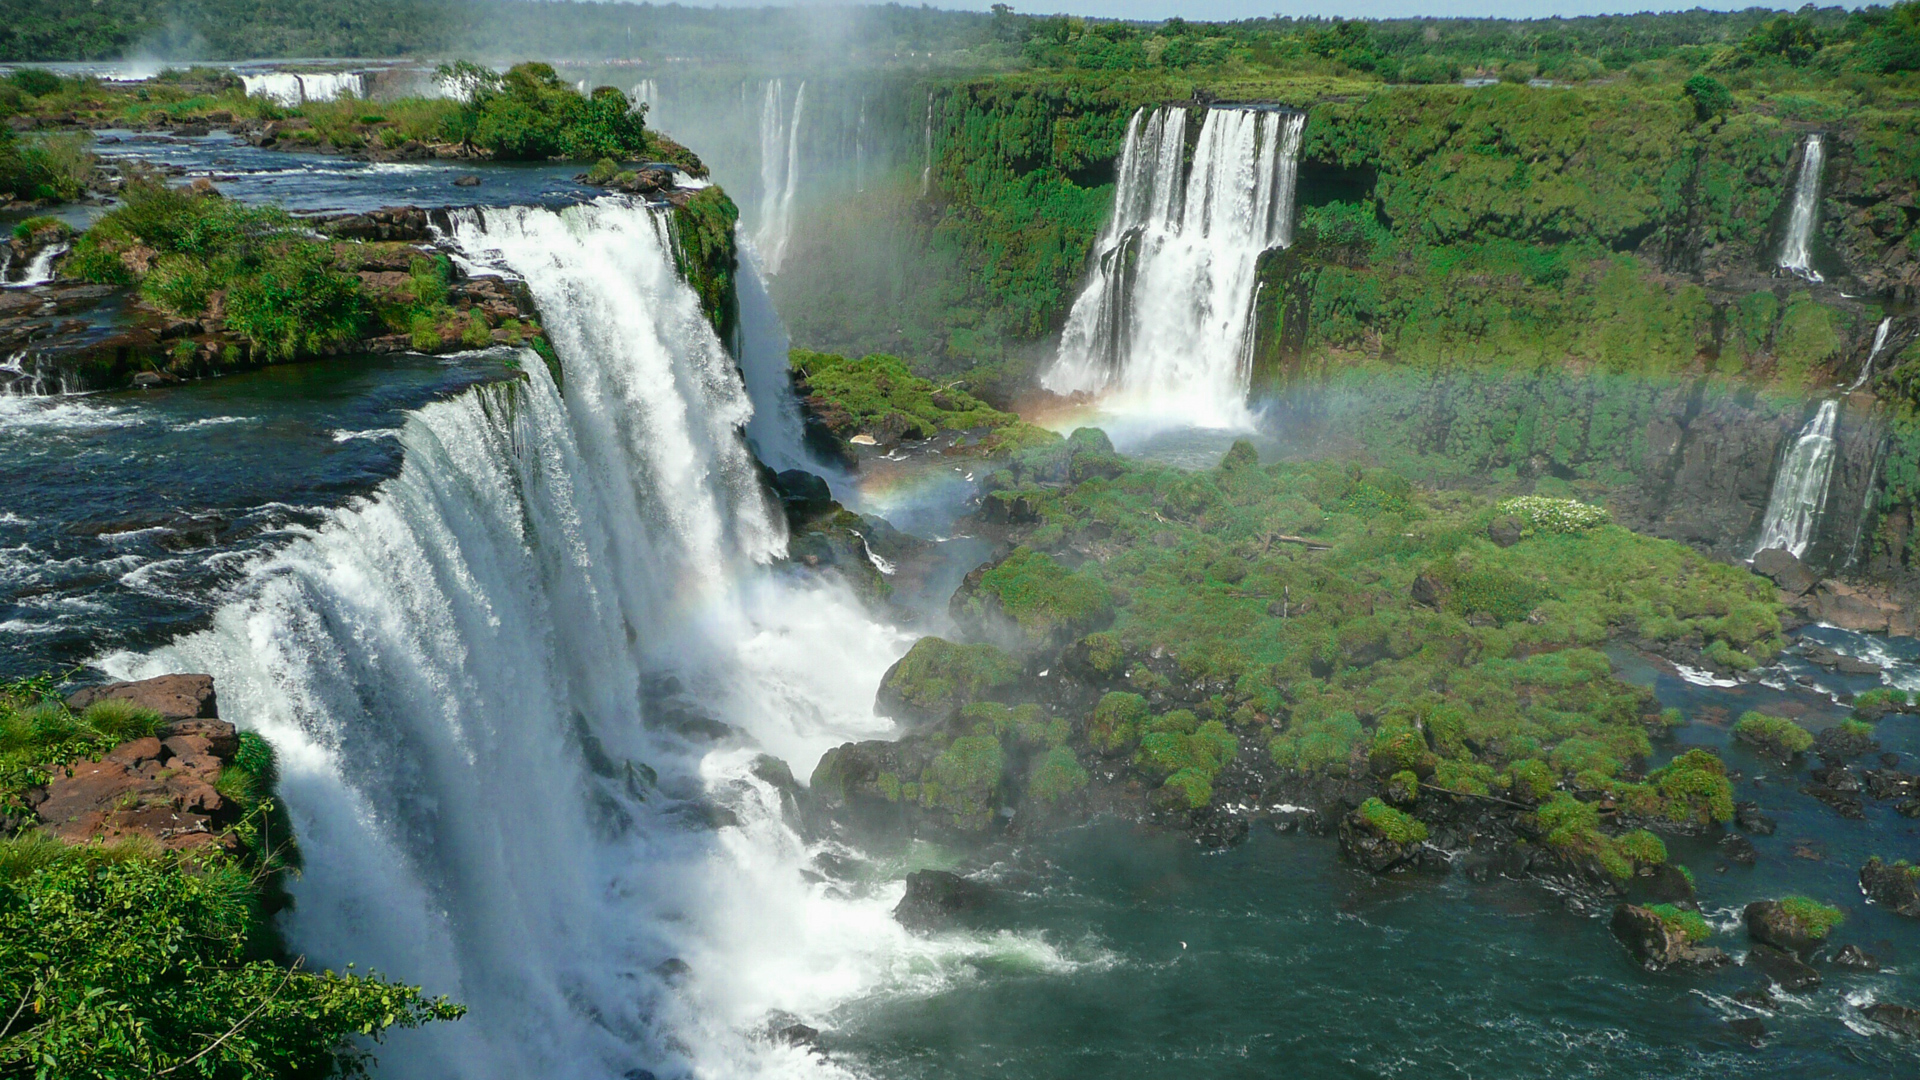 A thundering falls spectacle of Foz do Iguaçu